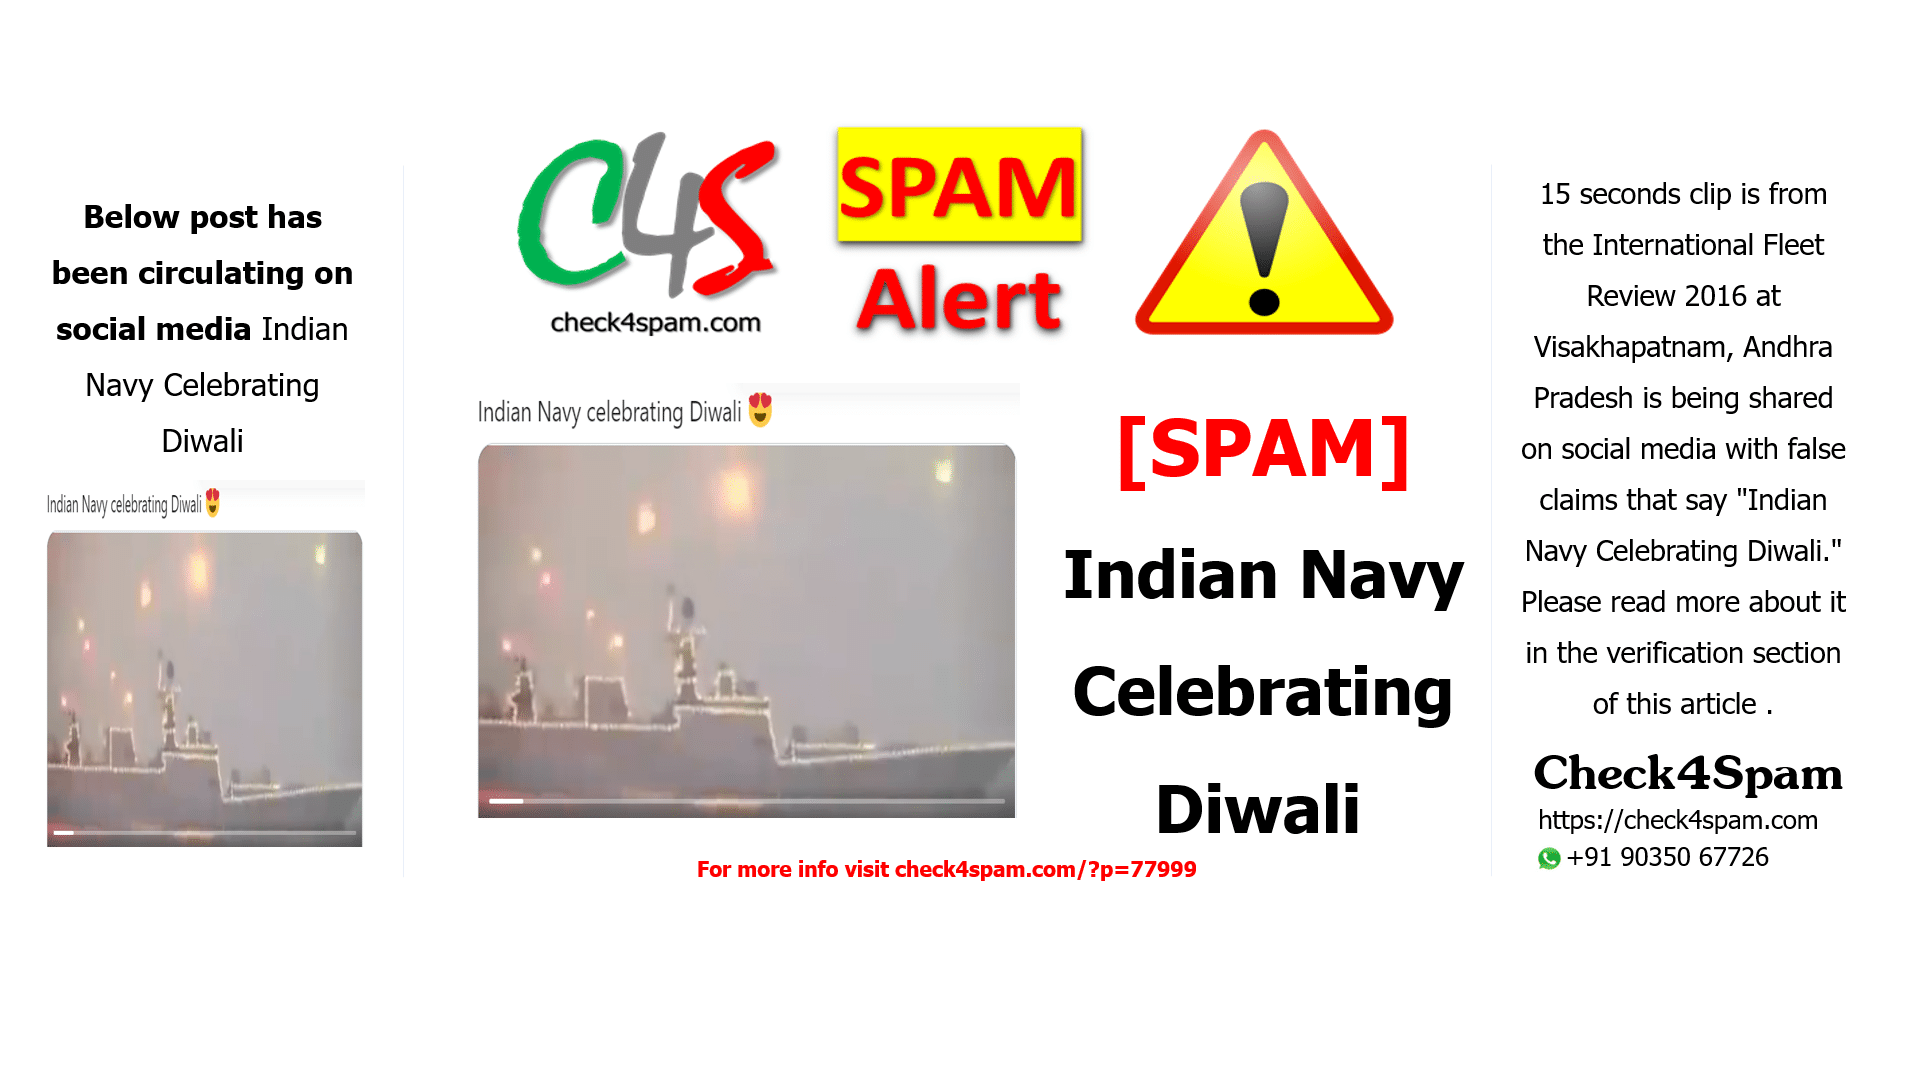 Indian Navy Celebrating Diwali